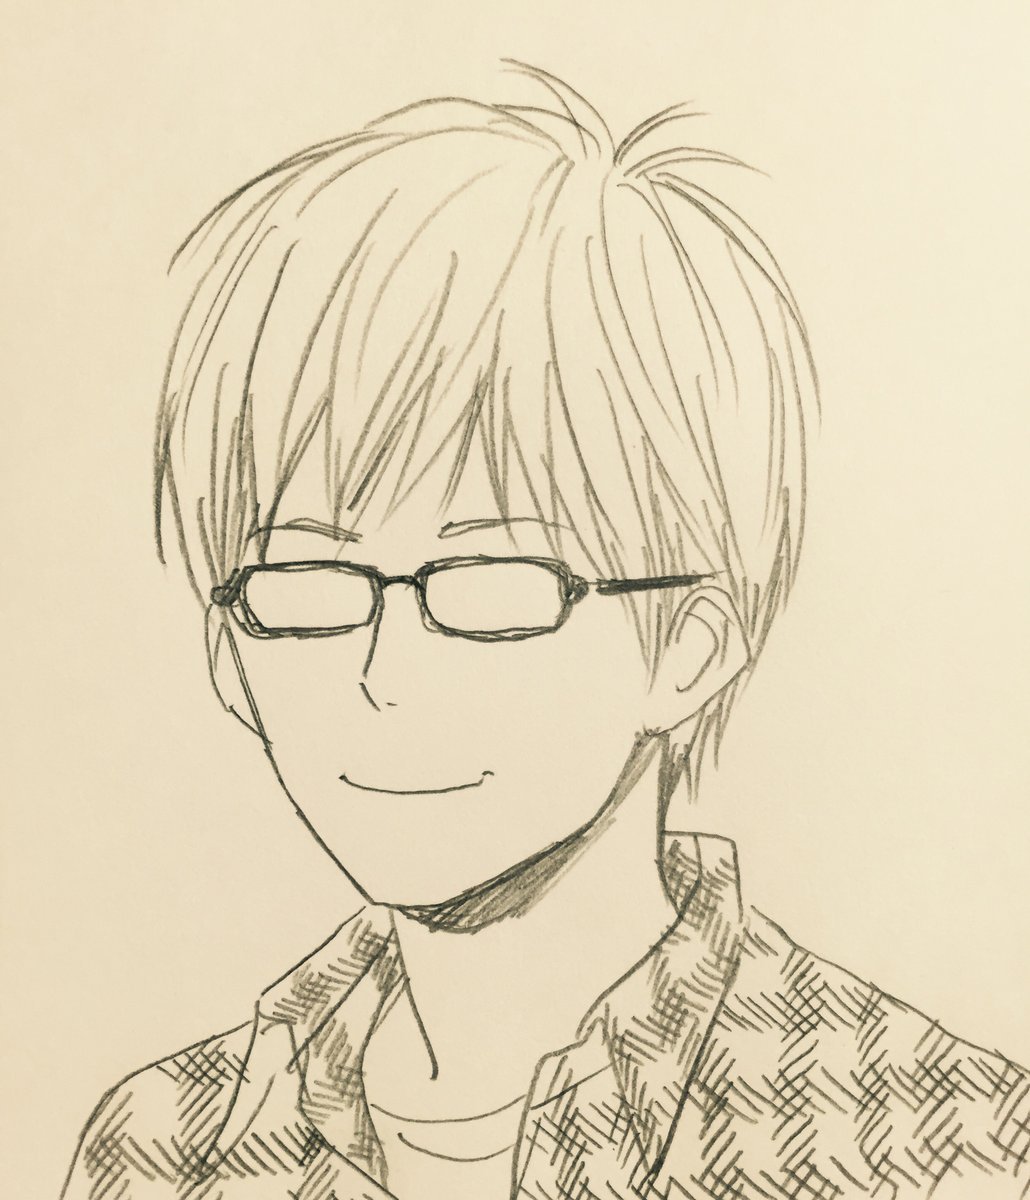 Orange Takano Ichigo Orange第10話始まってた リレーの回です 今週は時間がなかったので萩田 のお兄さんを描きました